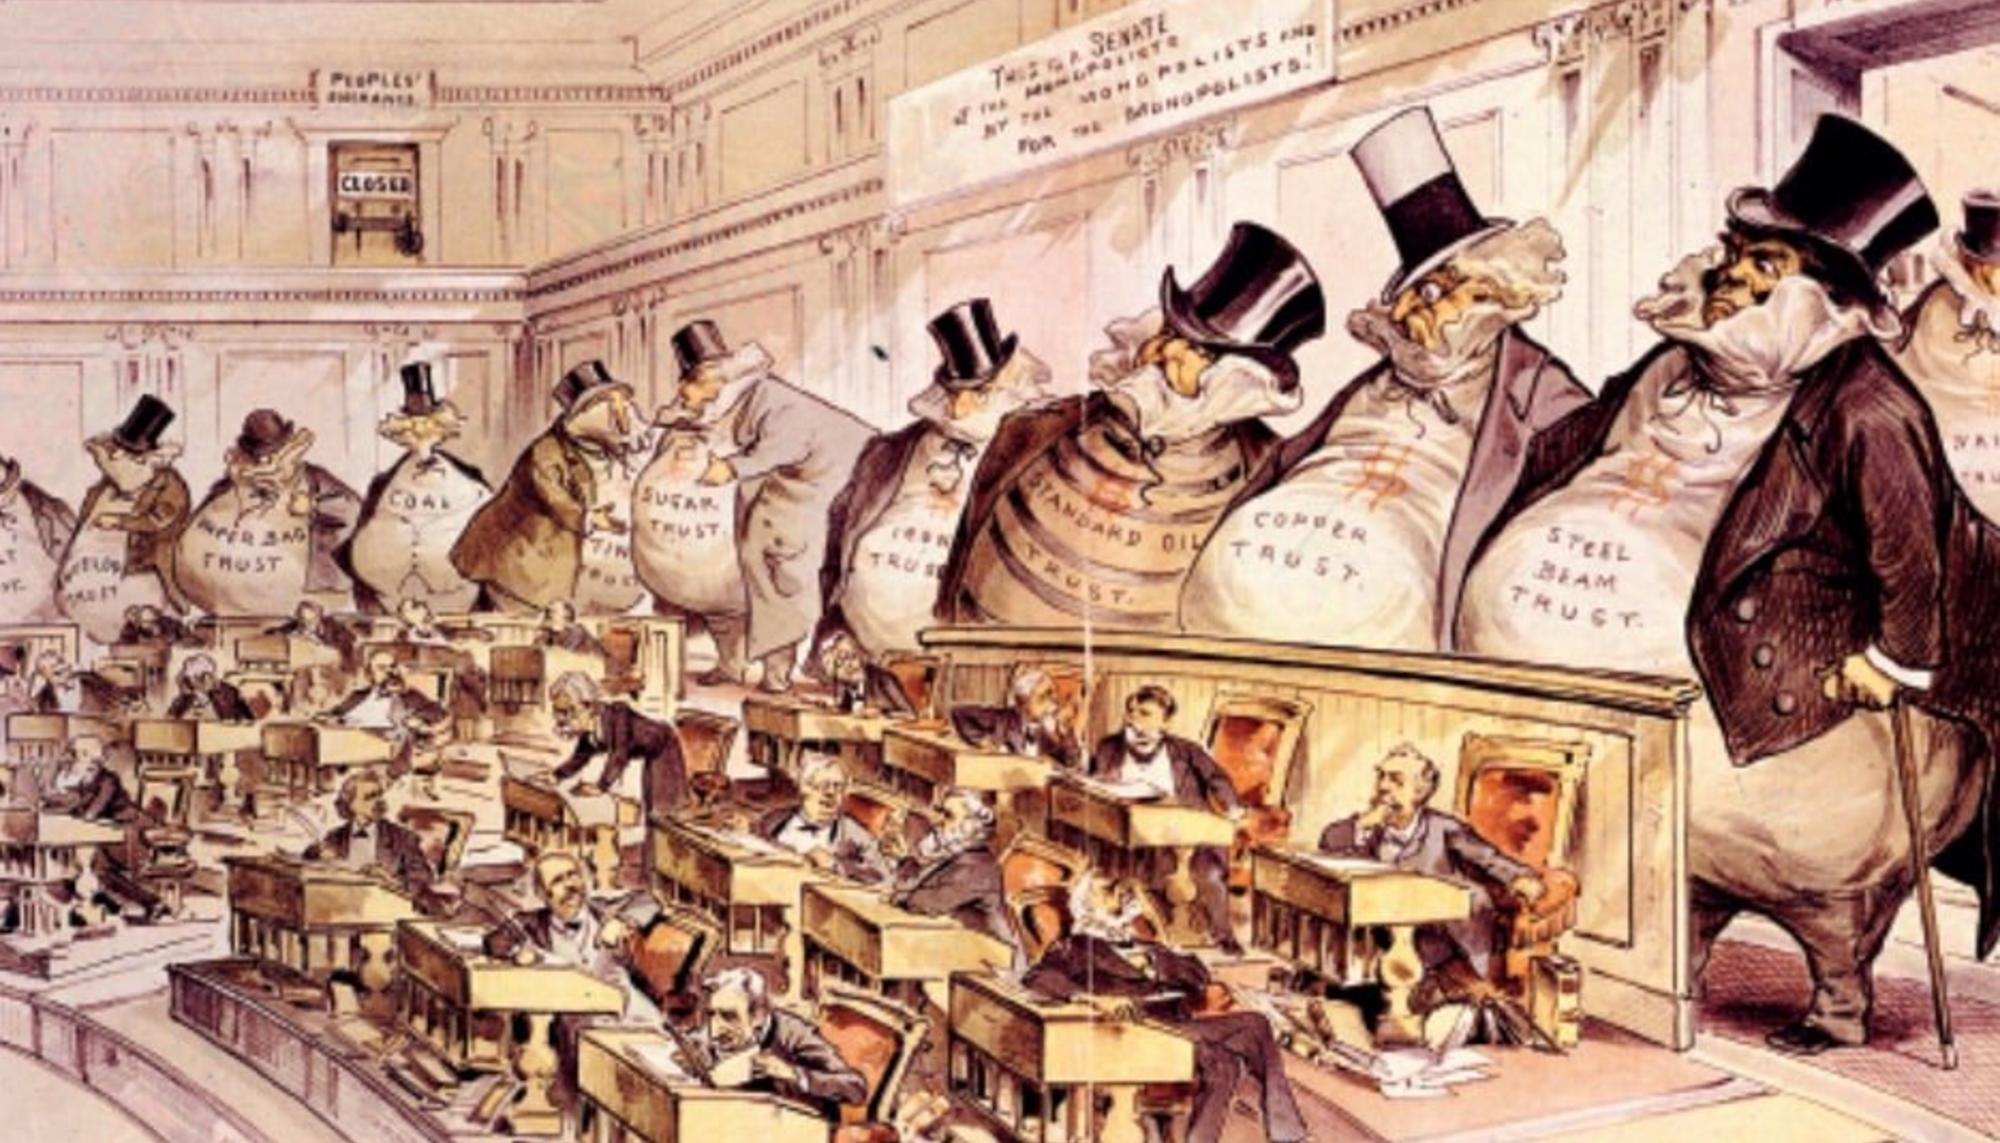 Joseph Keppler's (1899) - Caricatura ilustrando la plutocracia